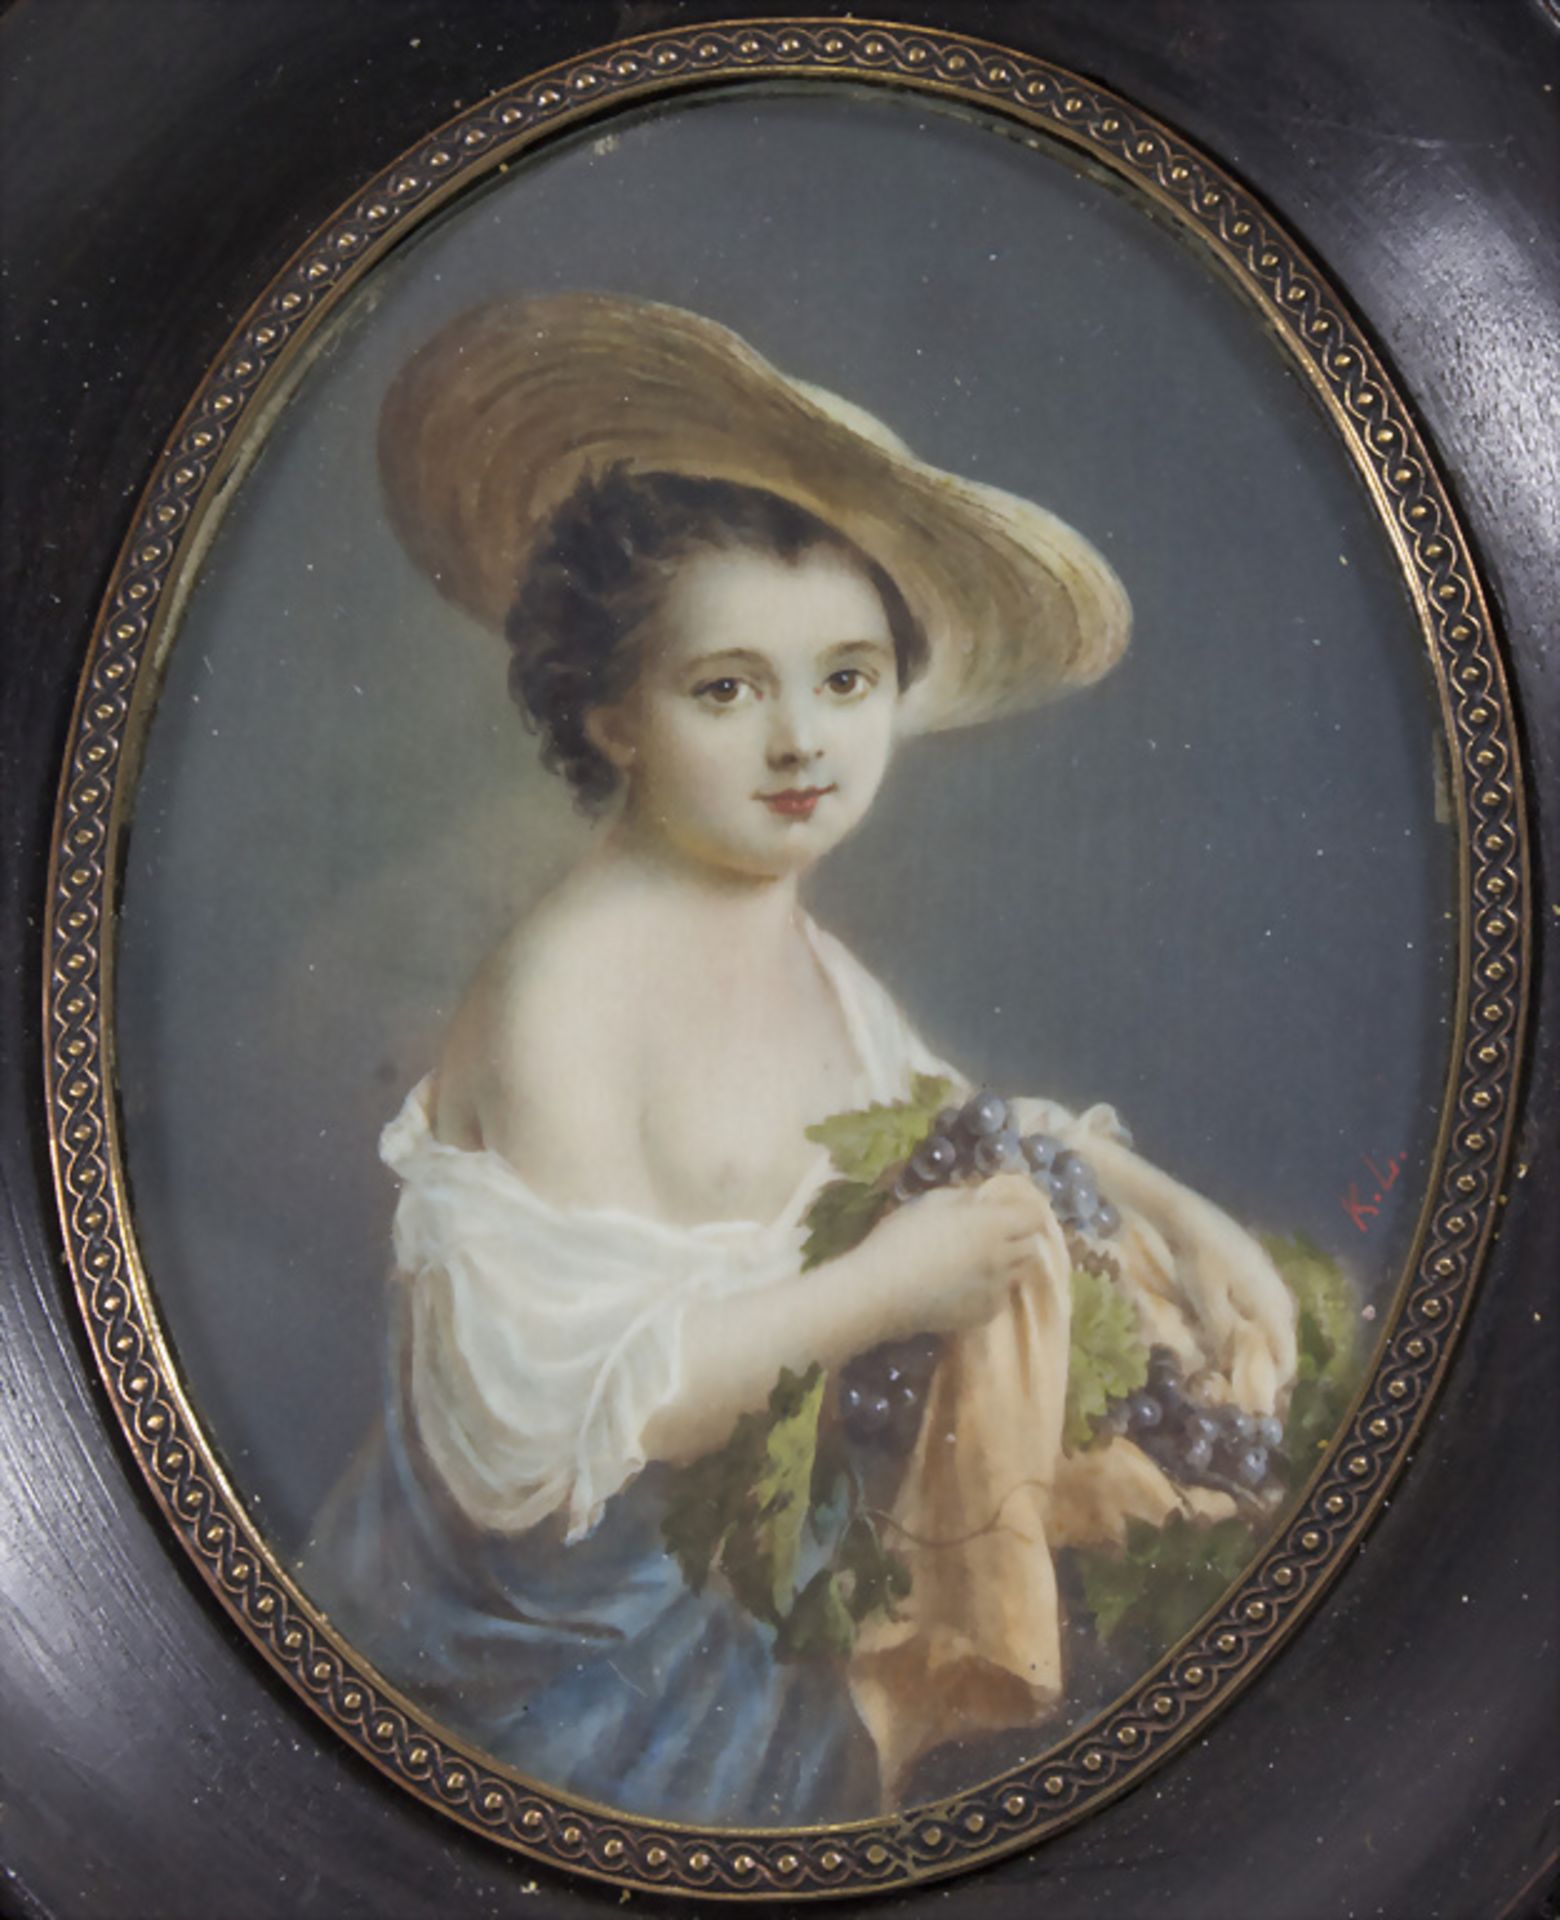 Sehr feines Miniatur Porträt der Mademoiselle Helvetius, Comtesse de Mun, nach François Hubert ...